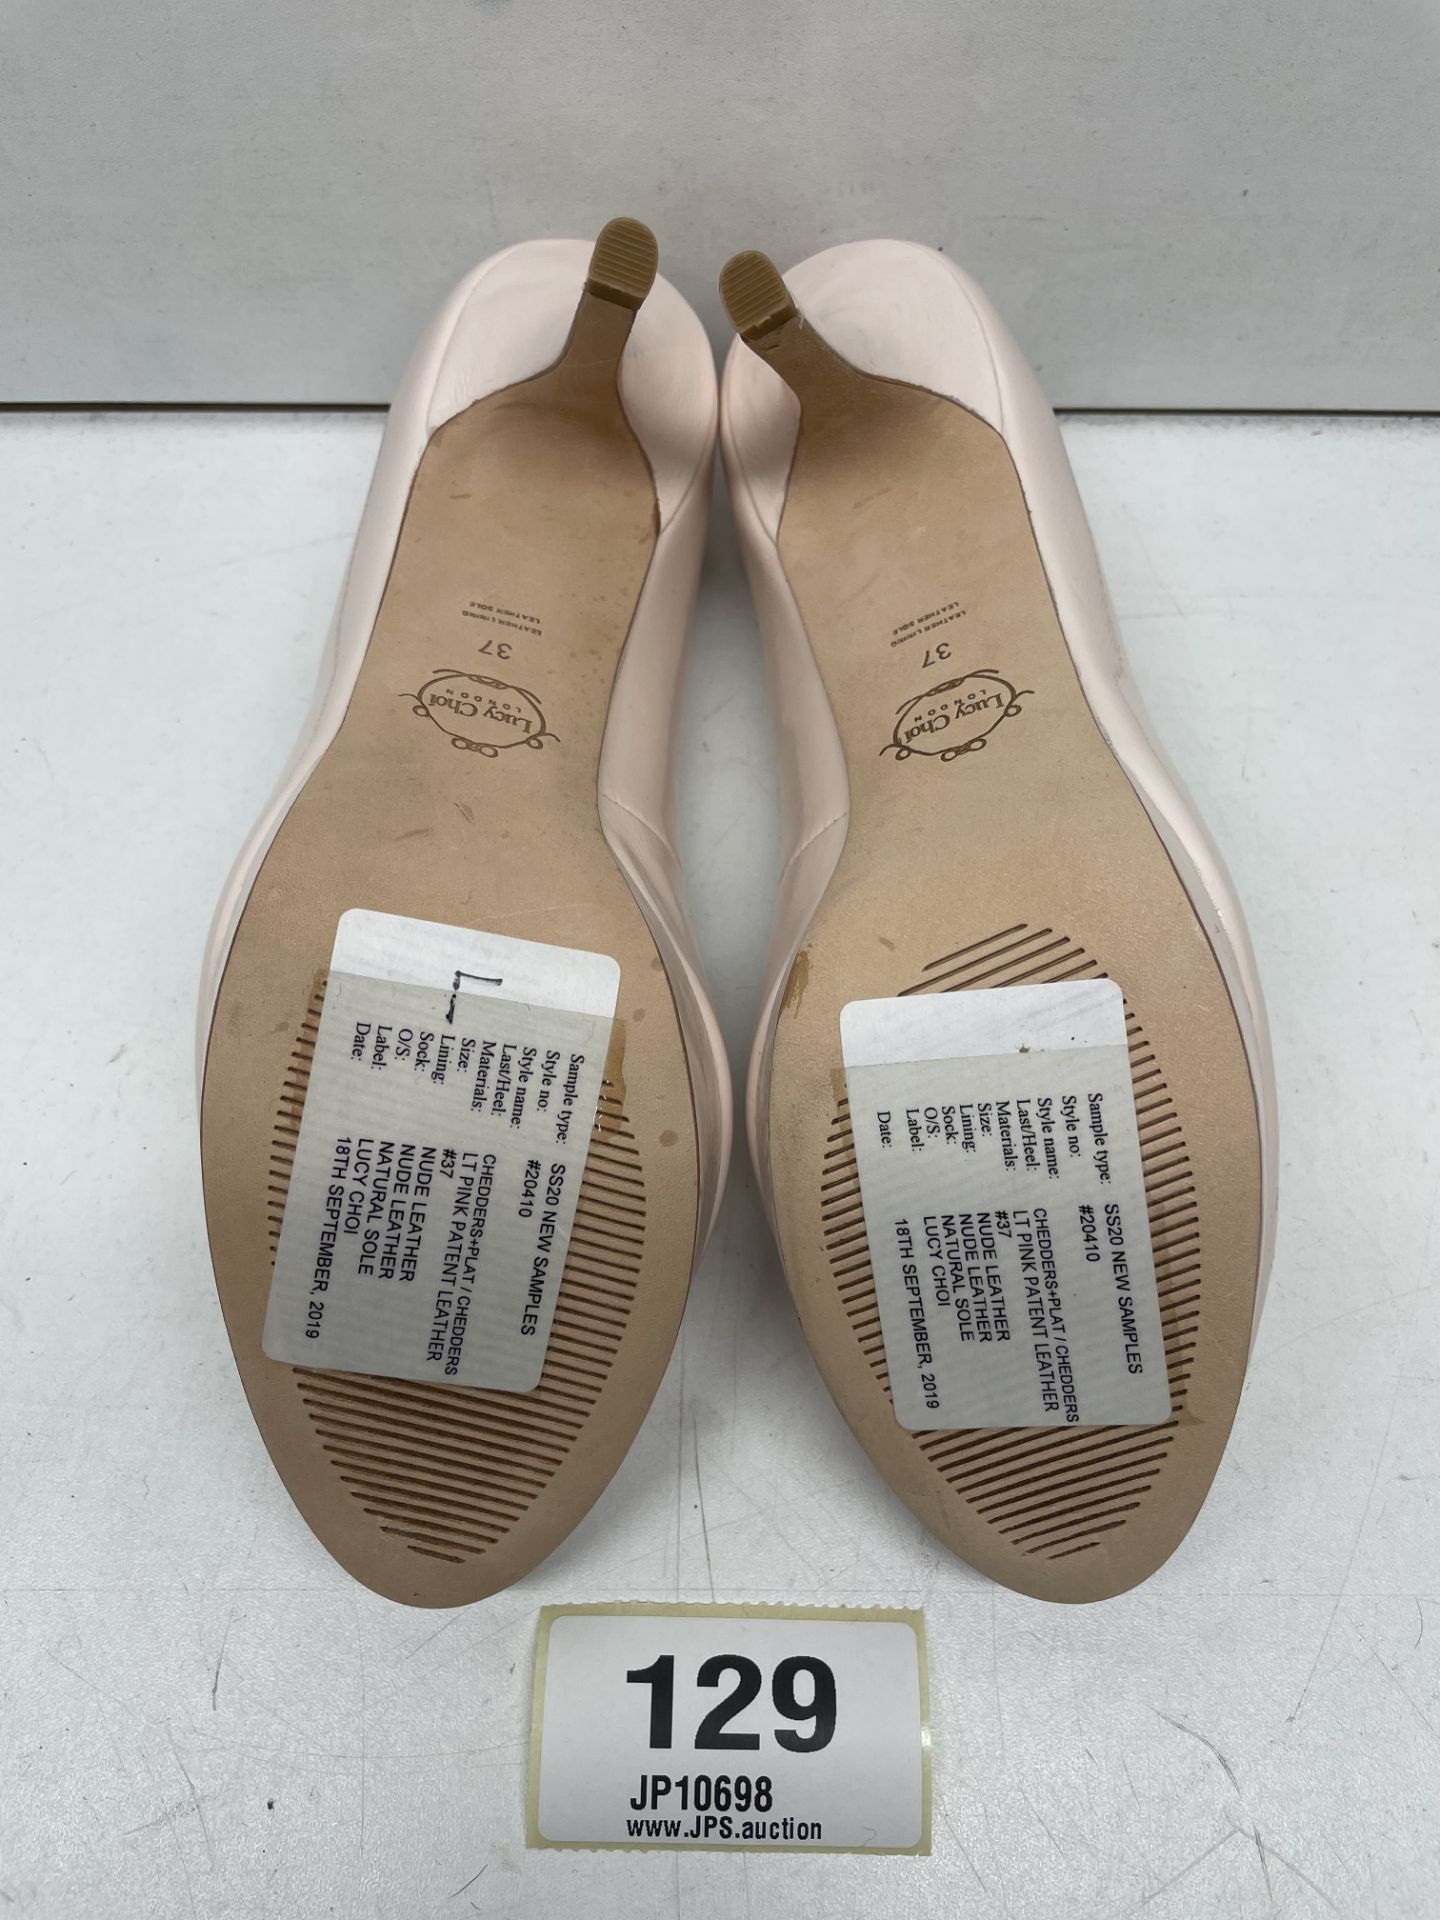 Ex-Display Lucy Choi Peep Toe Platform Heels | Eur 37 - Image 4 of 4